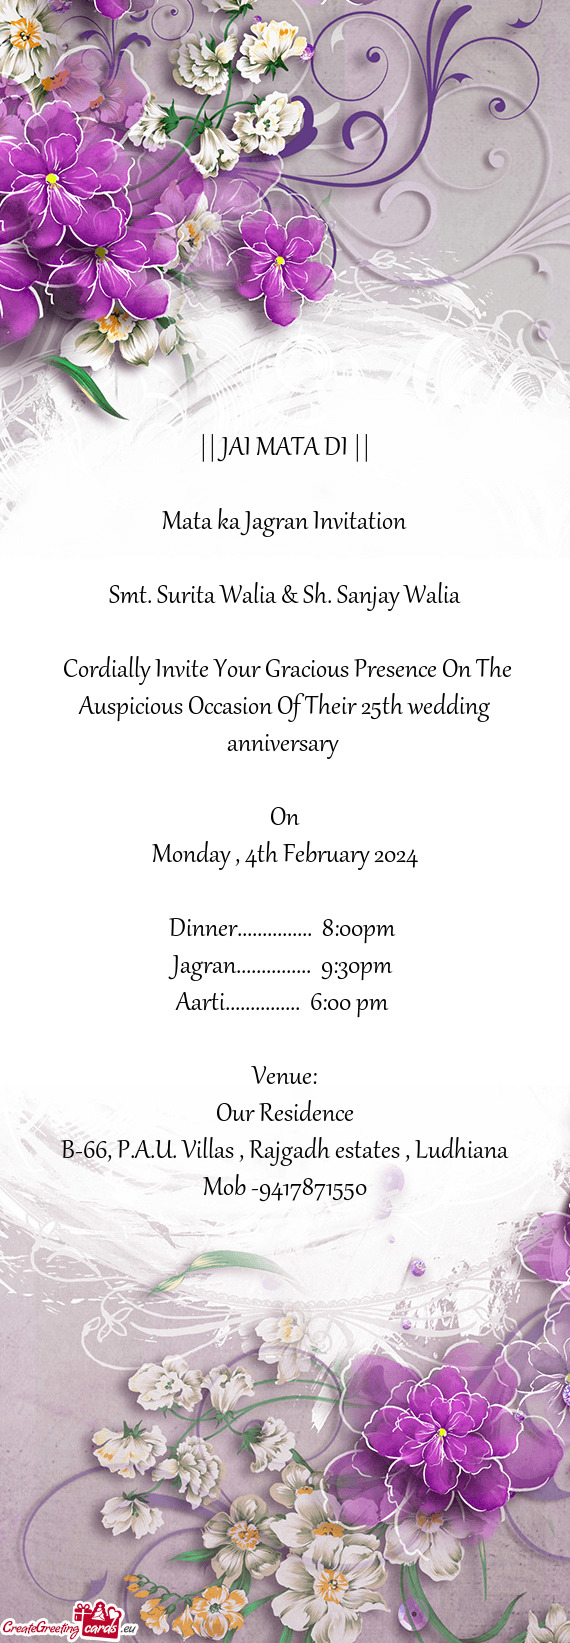 Smt. Surita Walia & Sh. Sanjay Walia